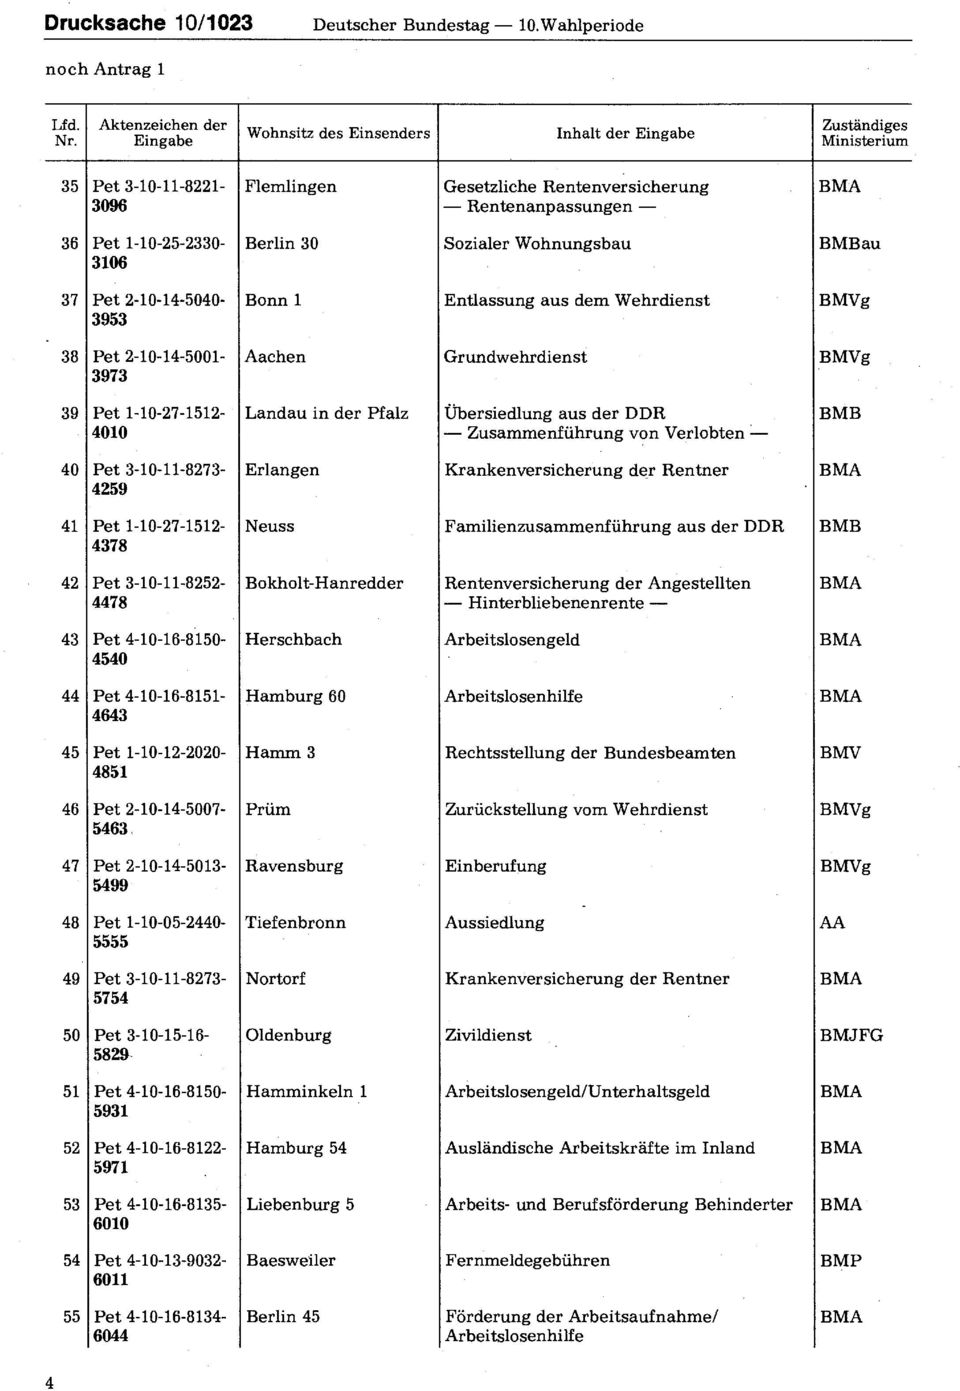 Bonn 1 Entlassung aus dem Wehrdienst BMVg 3953 38 Pet 2-10-14-5001- Aachen Grundwehrdienst BMVg 3973 39 Pet 1-10-27-1512- Landau in der Pfalz Übersiedlung aus der DDR BMB 4010 Zusammenführung von